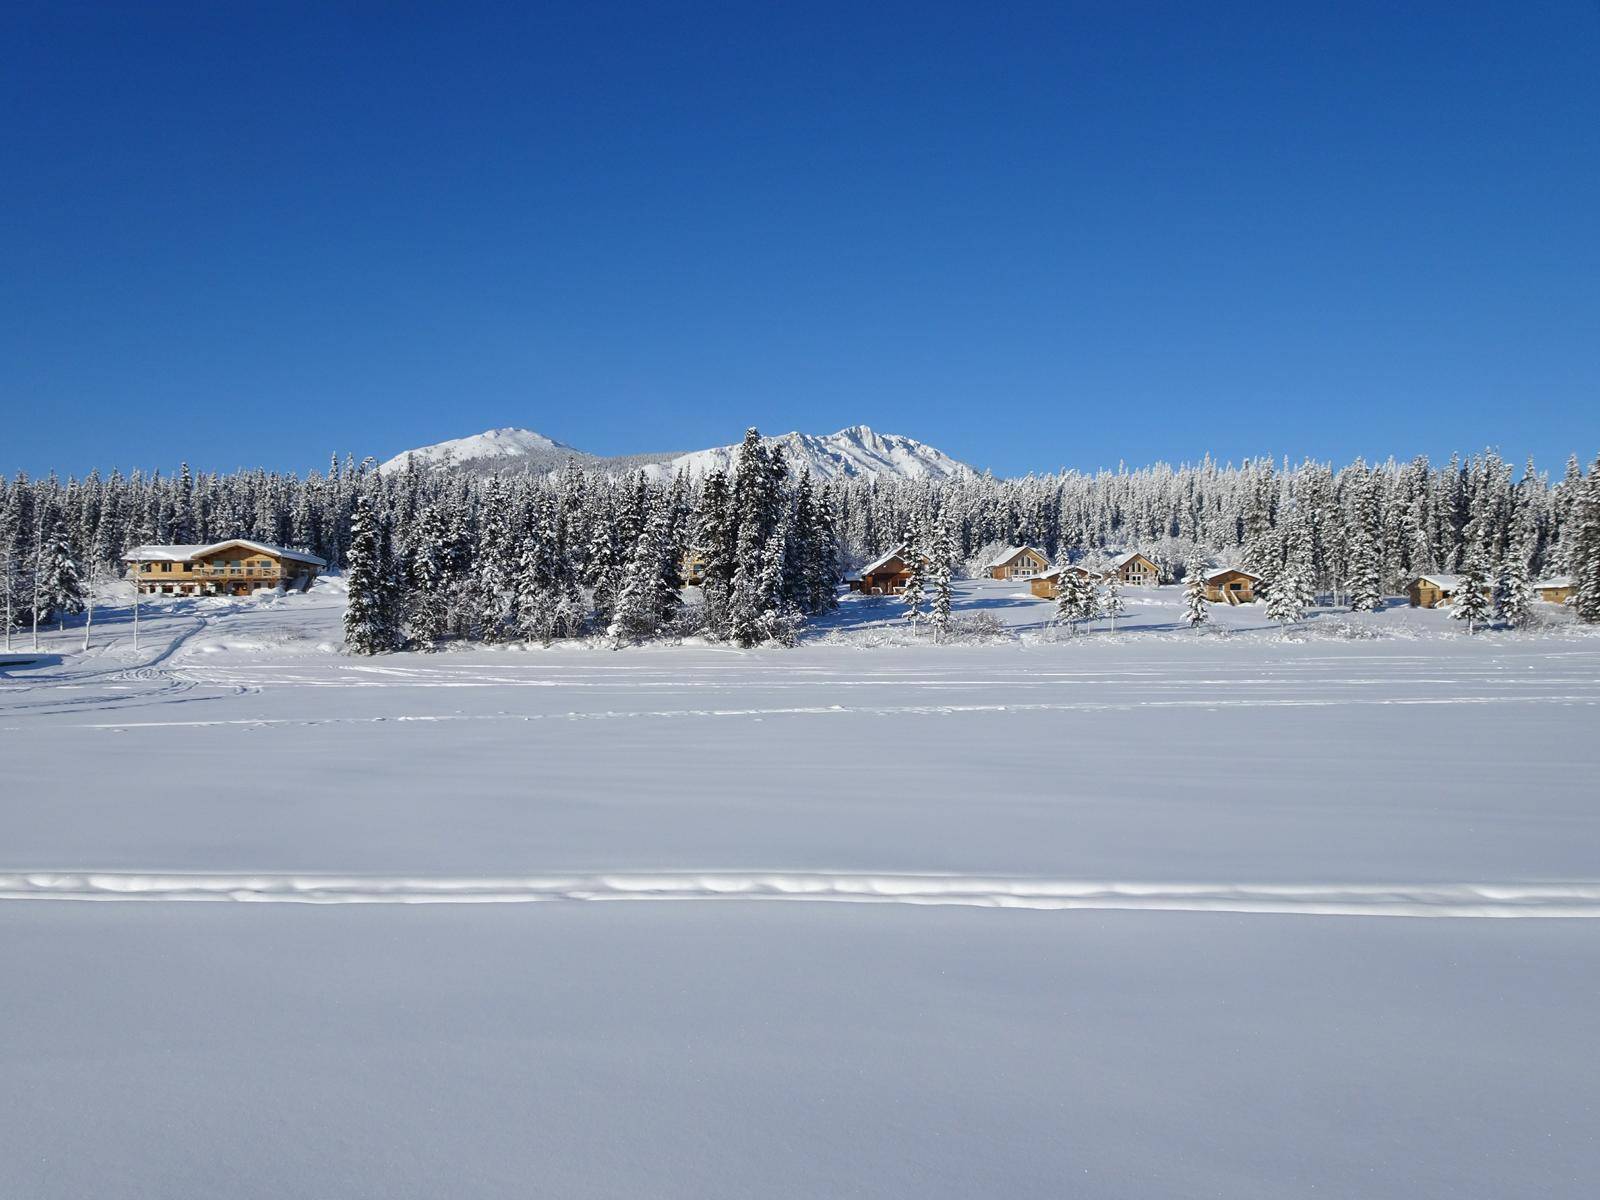 Snowy resort from frozen lake